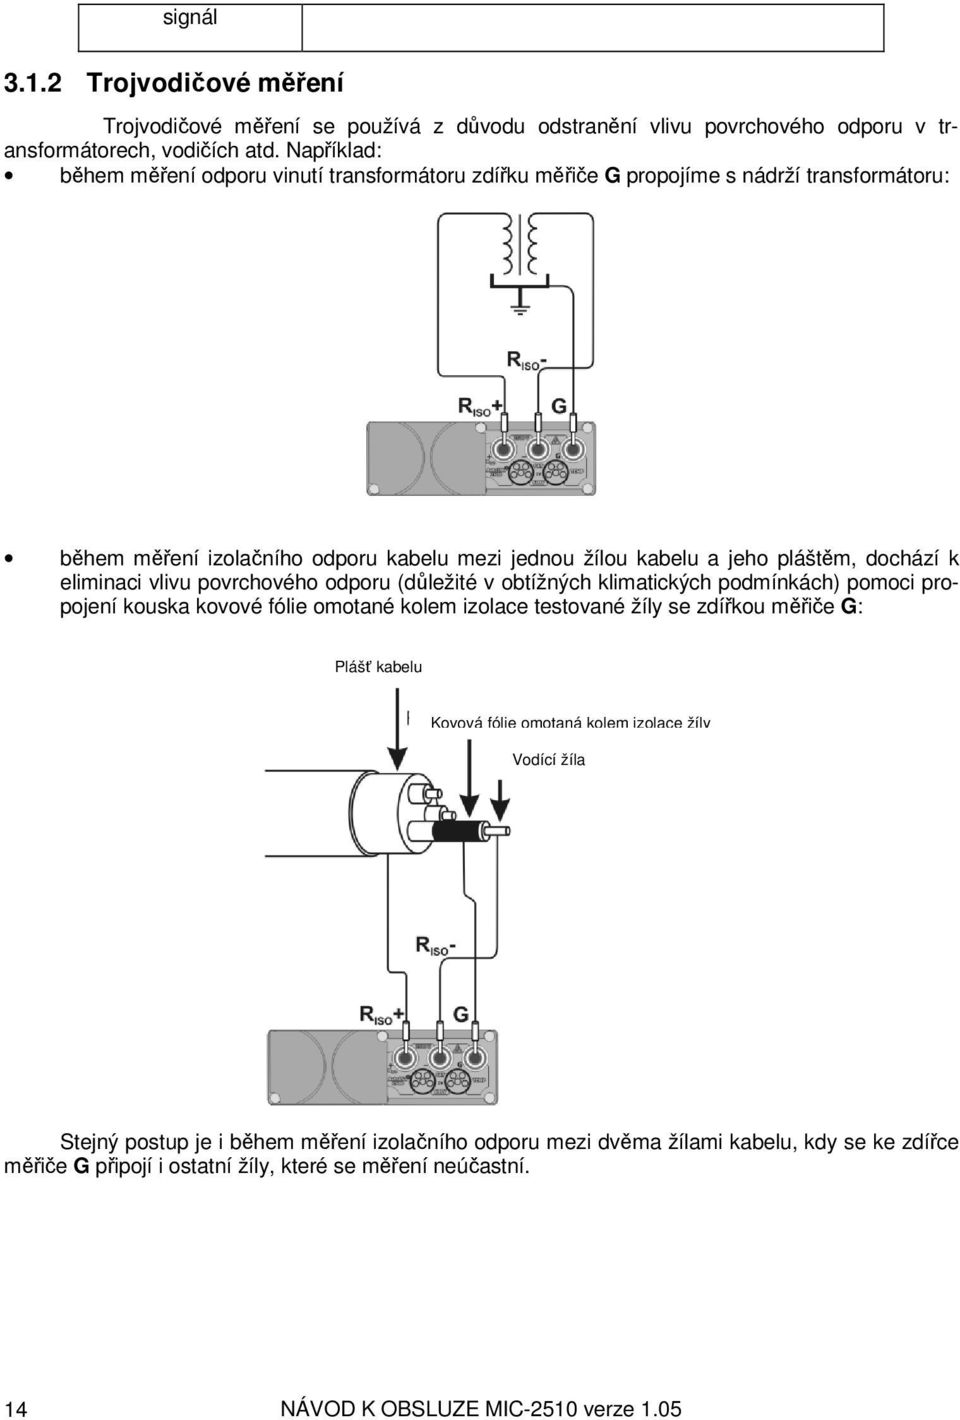 eliminaci vlivu povrchového odporu (důležité v obtížných klimatických podmínkách) pomoci propojení kouska kovové fólie omotané kolem izolace testované žíly se zdířkou měřiče G: Plášť kabelu